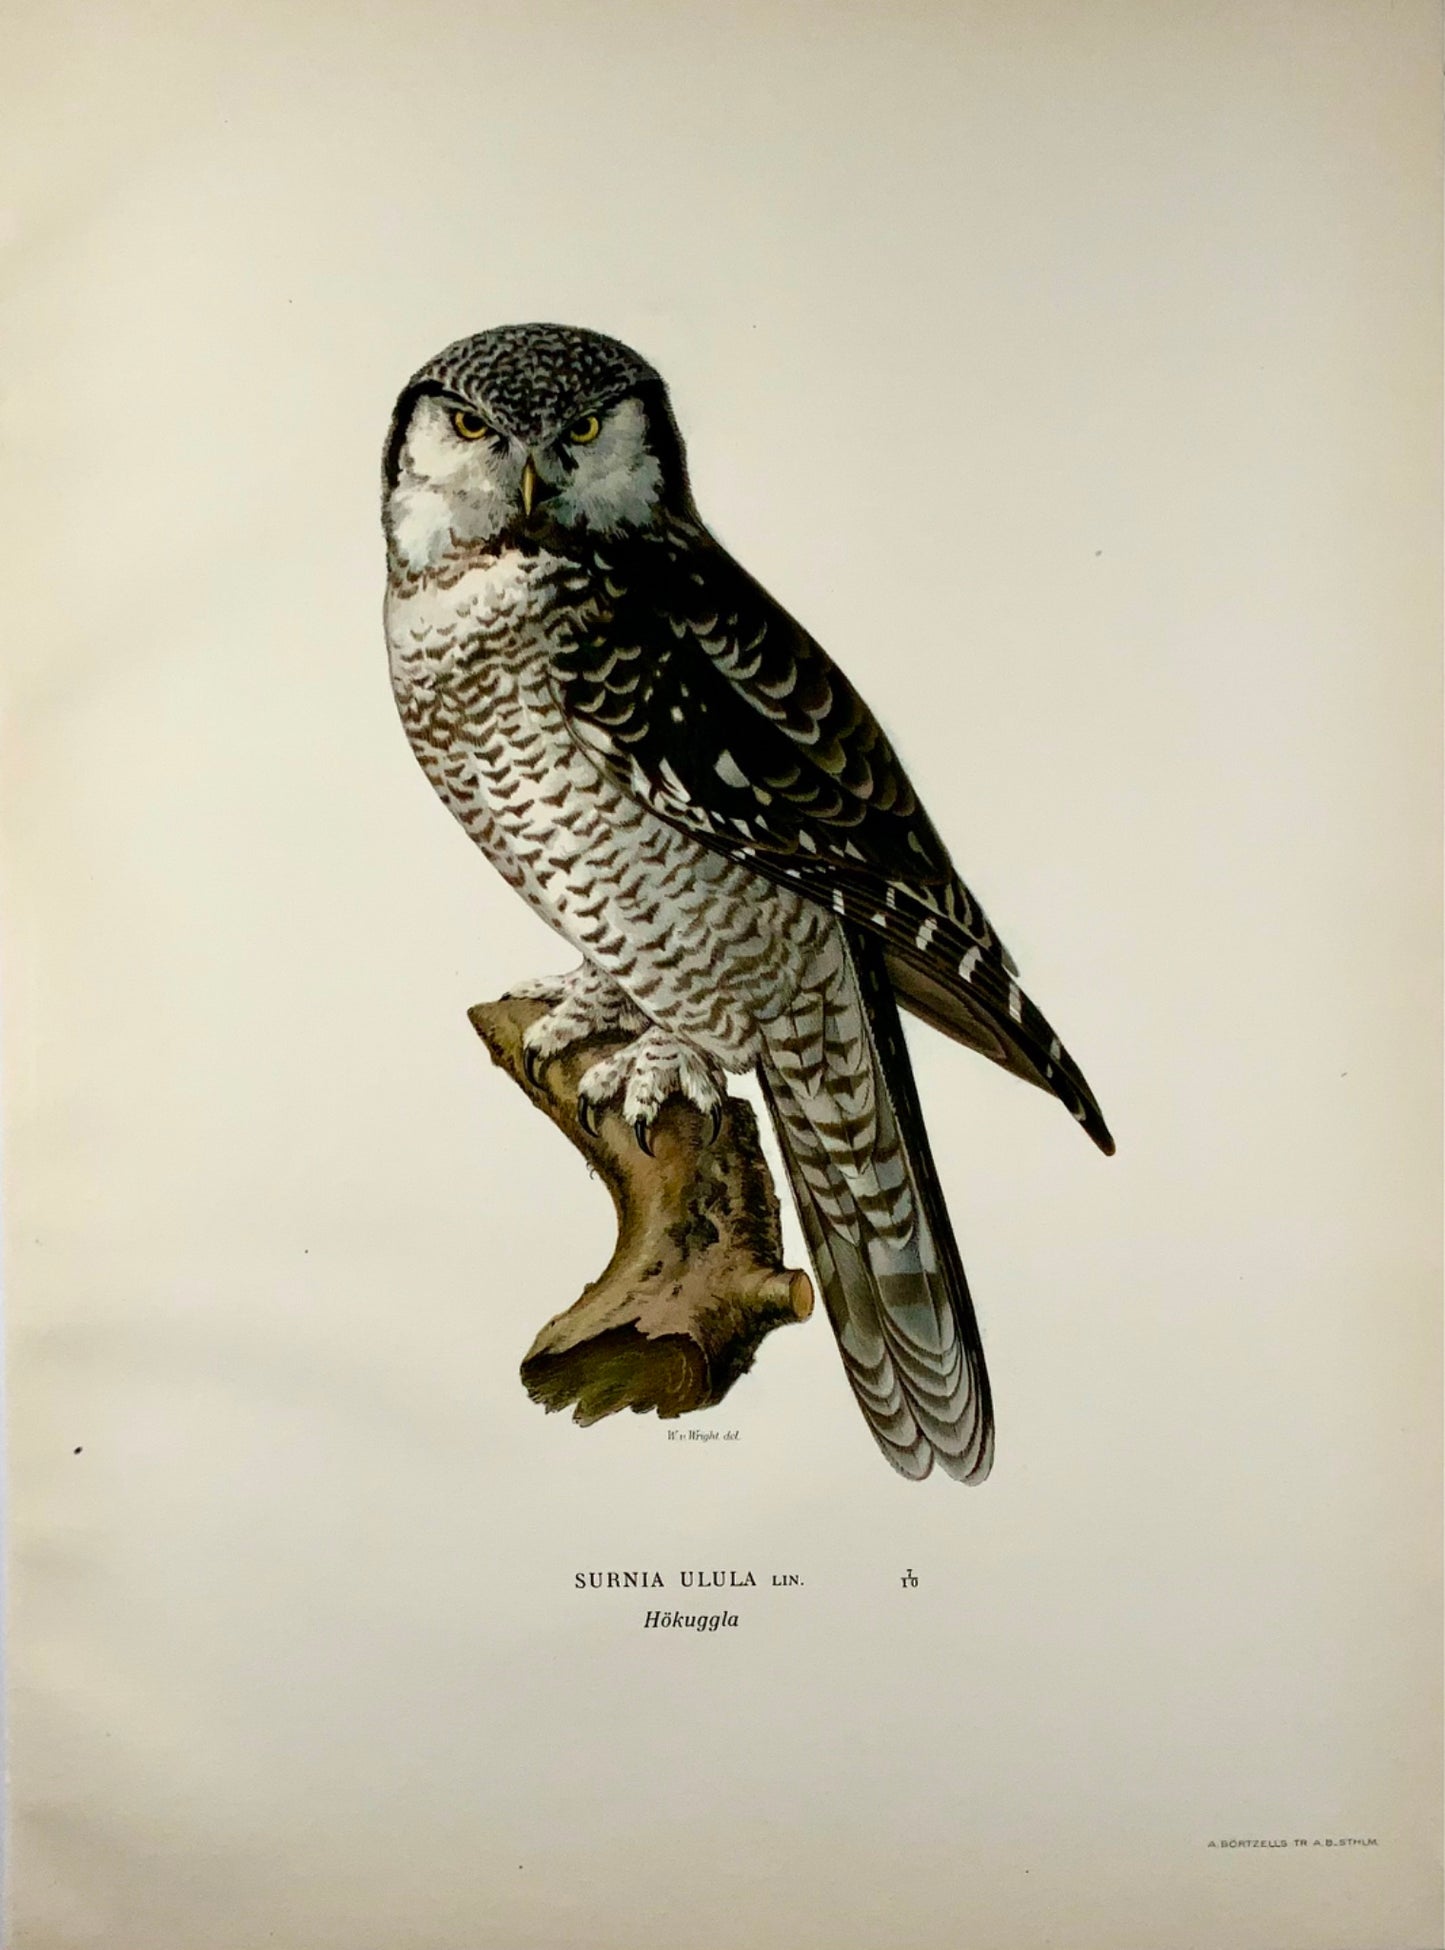 1918 Von Wright, Hawk-Owl, large folio lithograph, ornithology